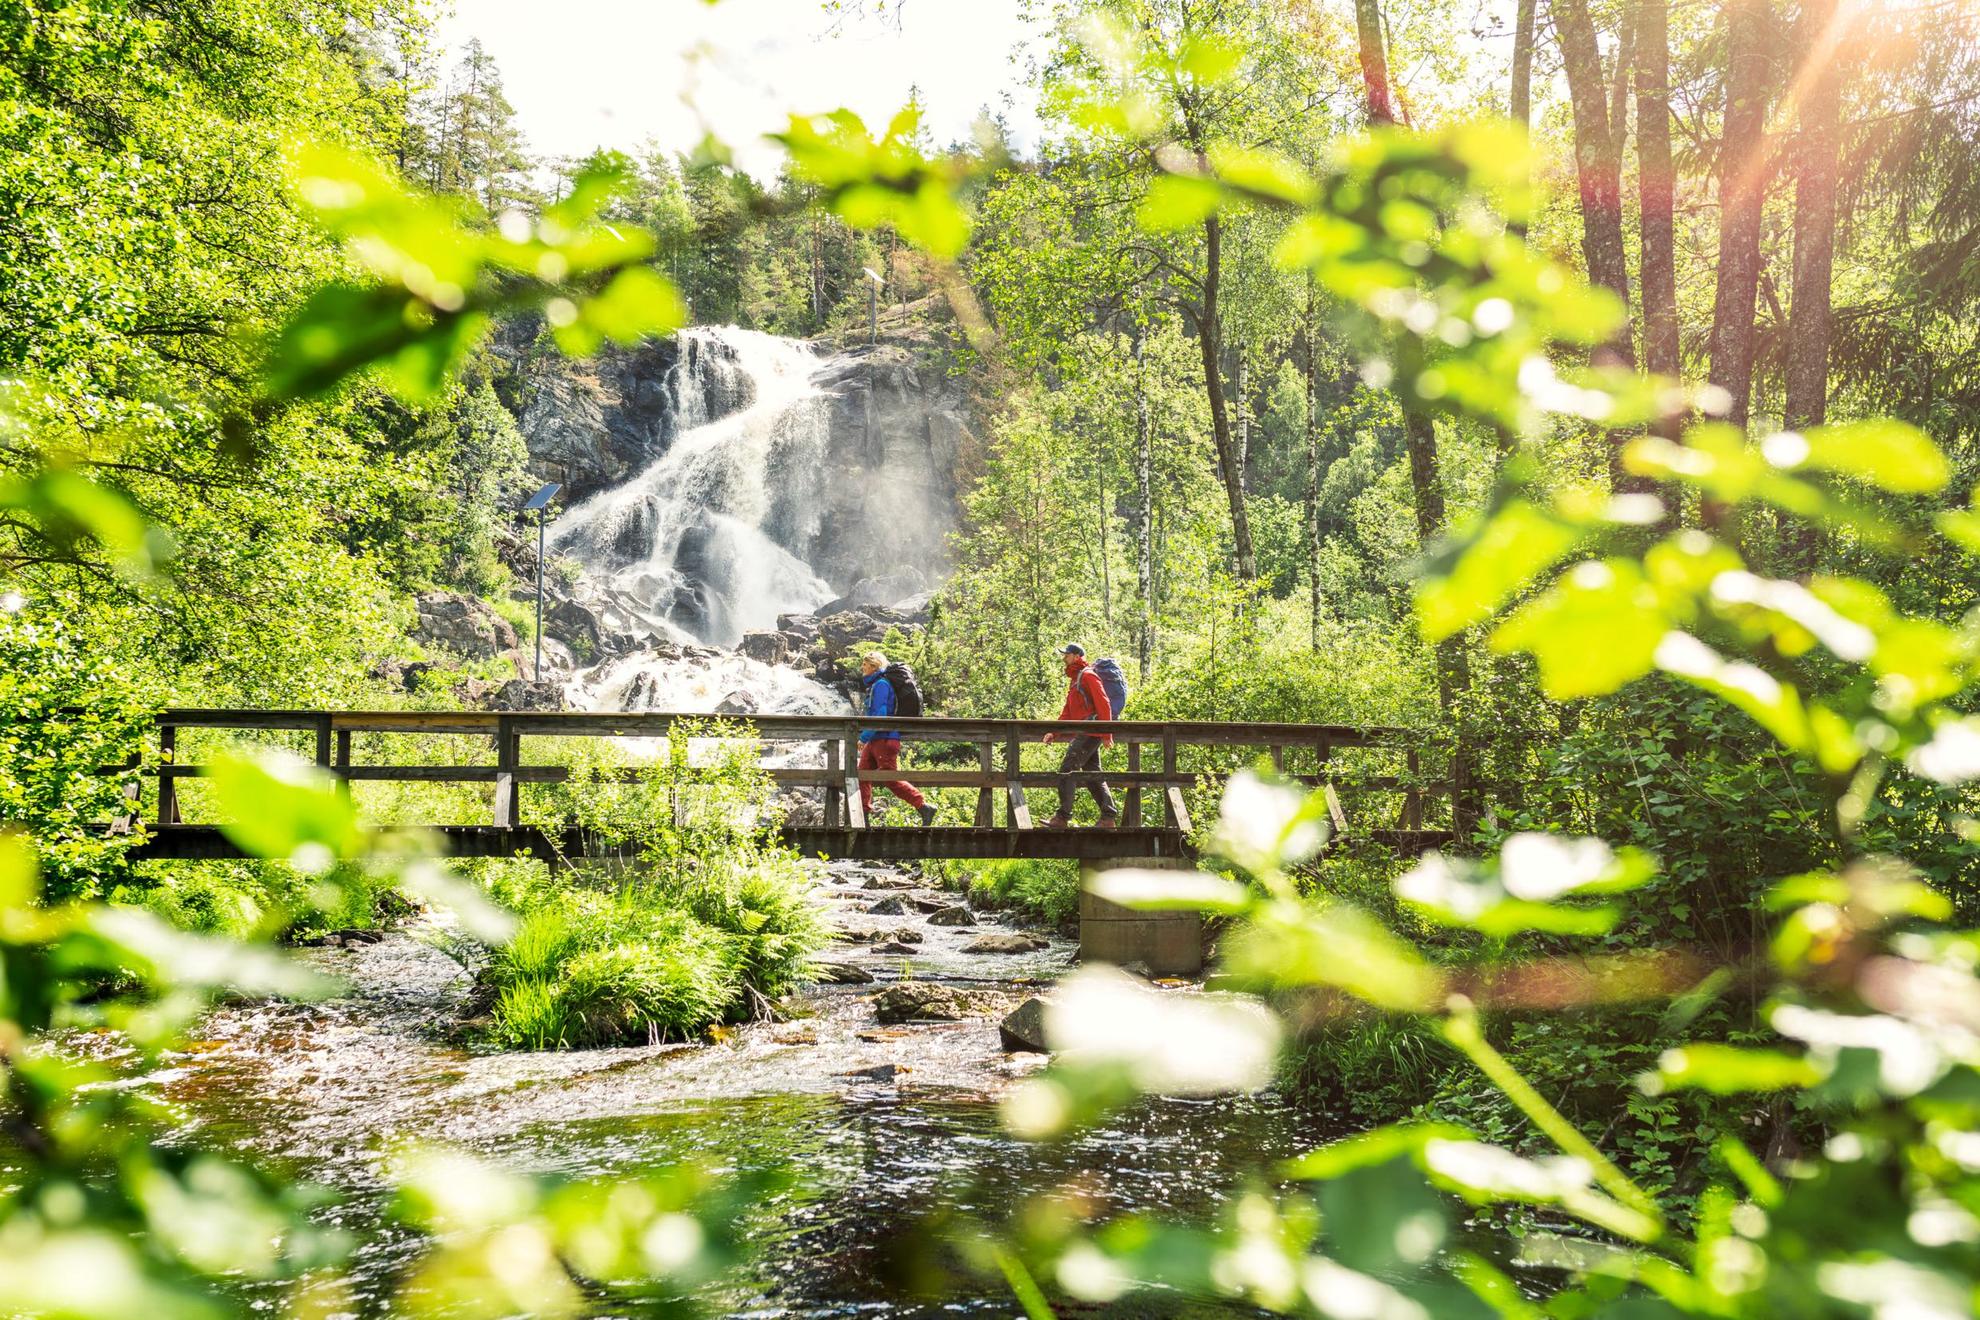 Deux personnes sont en train de marcher sur un pont en bois dans une forêt. On voit une cascade en arrière-plan.